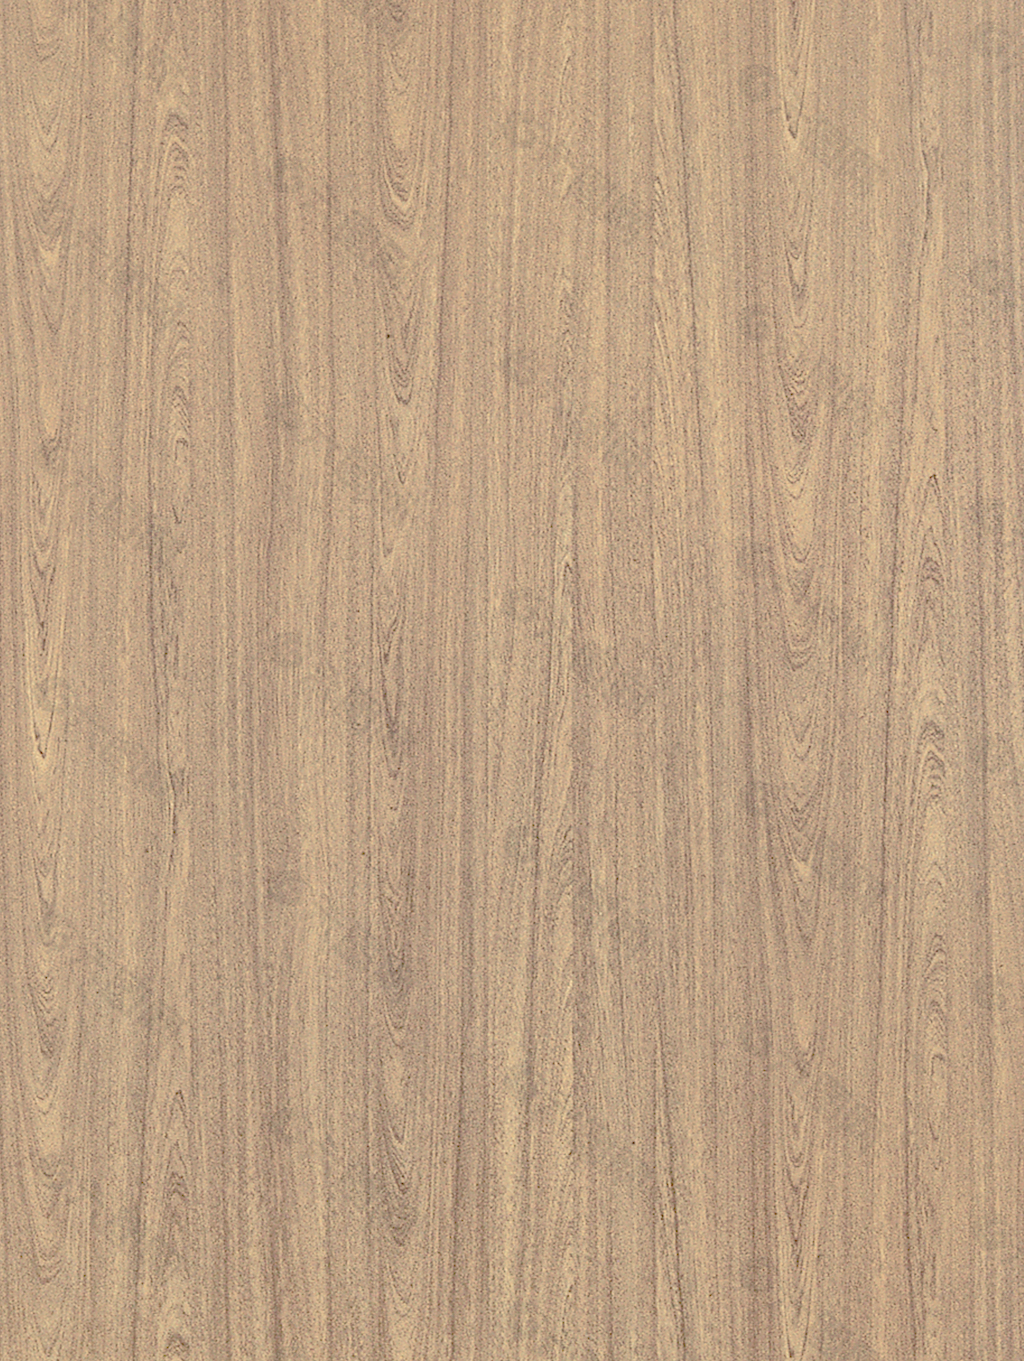 木材木纹木纹素材效果图3d素材 584